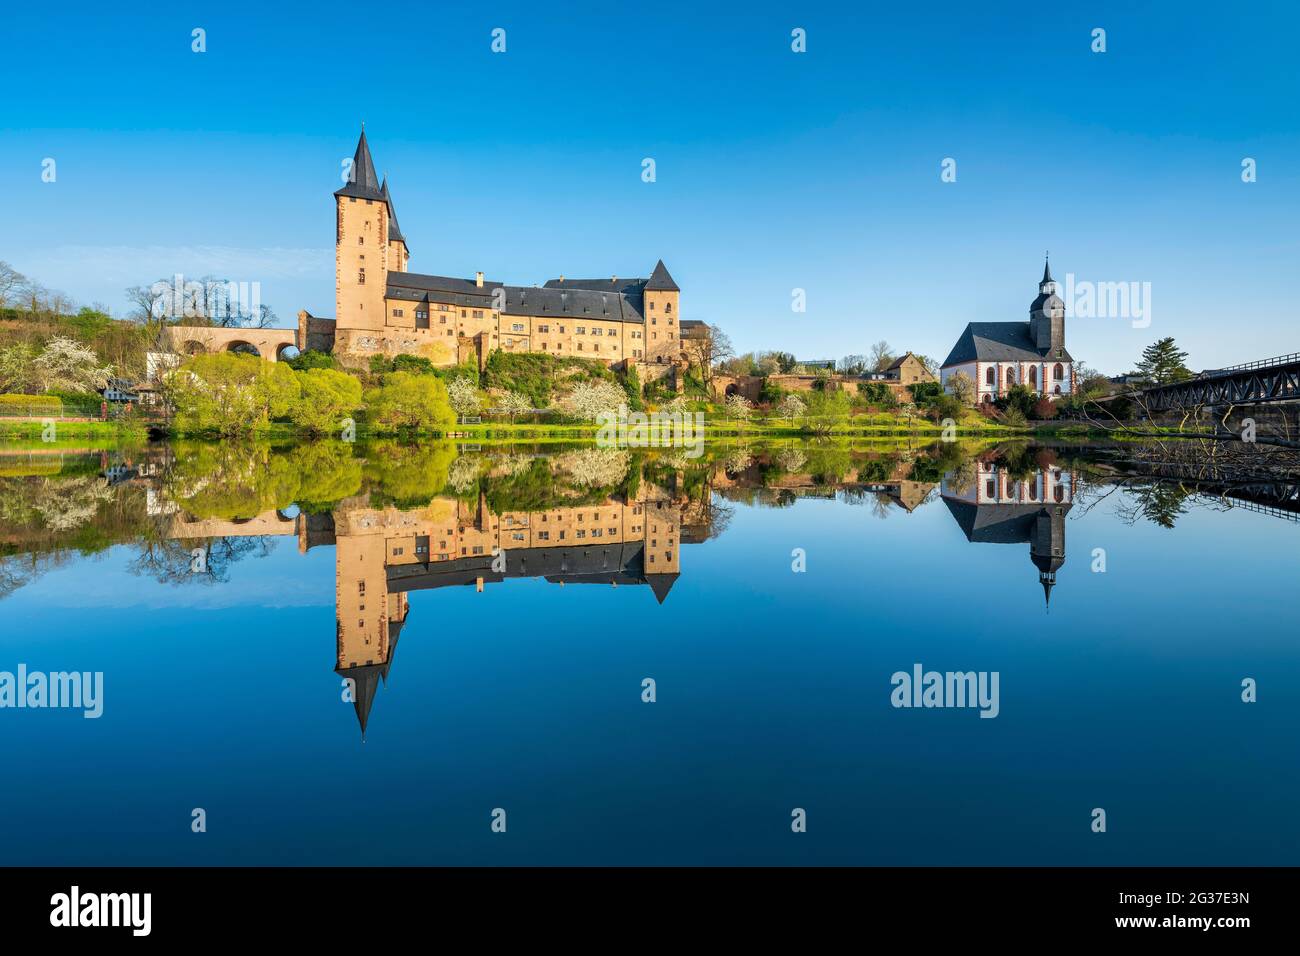 Château de Rochlitz et église de Petri, reflet parfait dans la rivière Zwickauer Mulde, Rochlitz, Saxe, Allemagne Banque D'Images